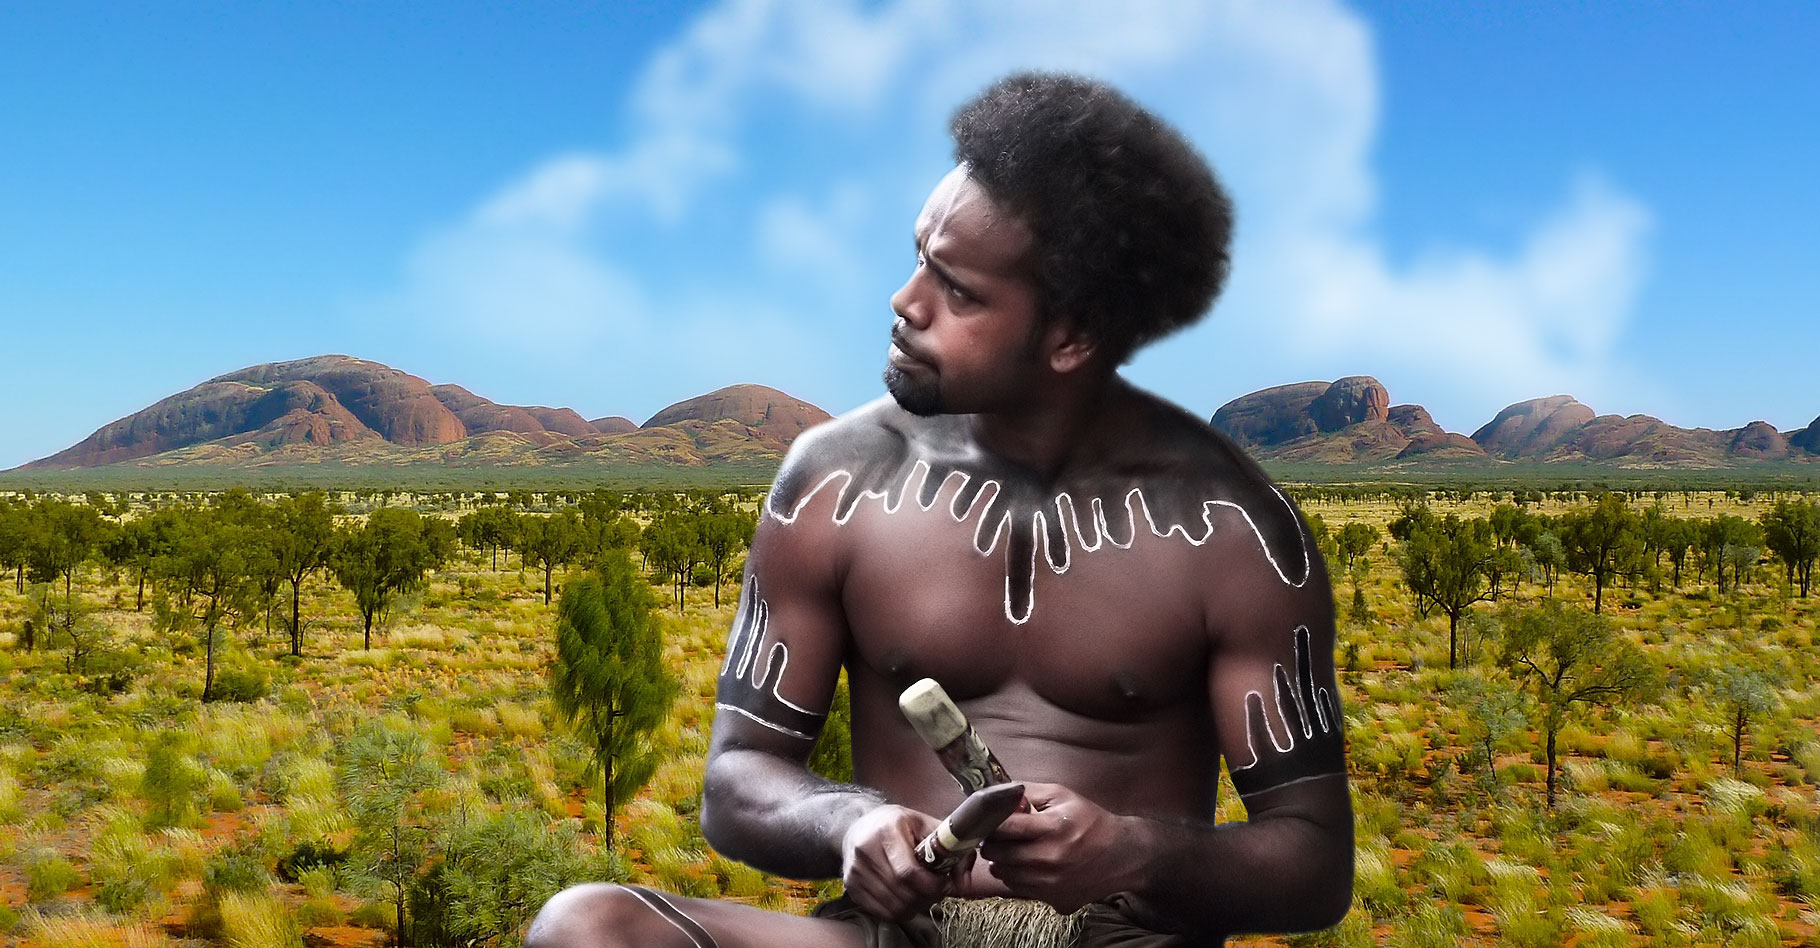 Comment les aborigènes d'Australie évitent-ils la consanguinité ? © Jlogan5, Steve Evans, Pixabay CC by 2.0